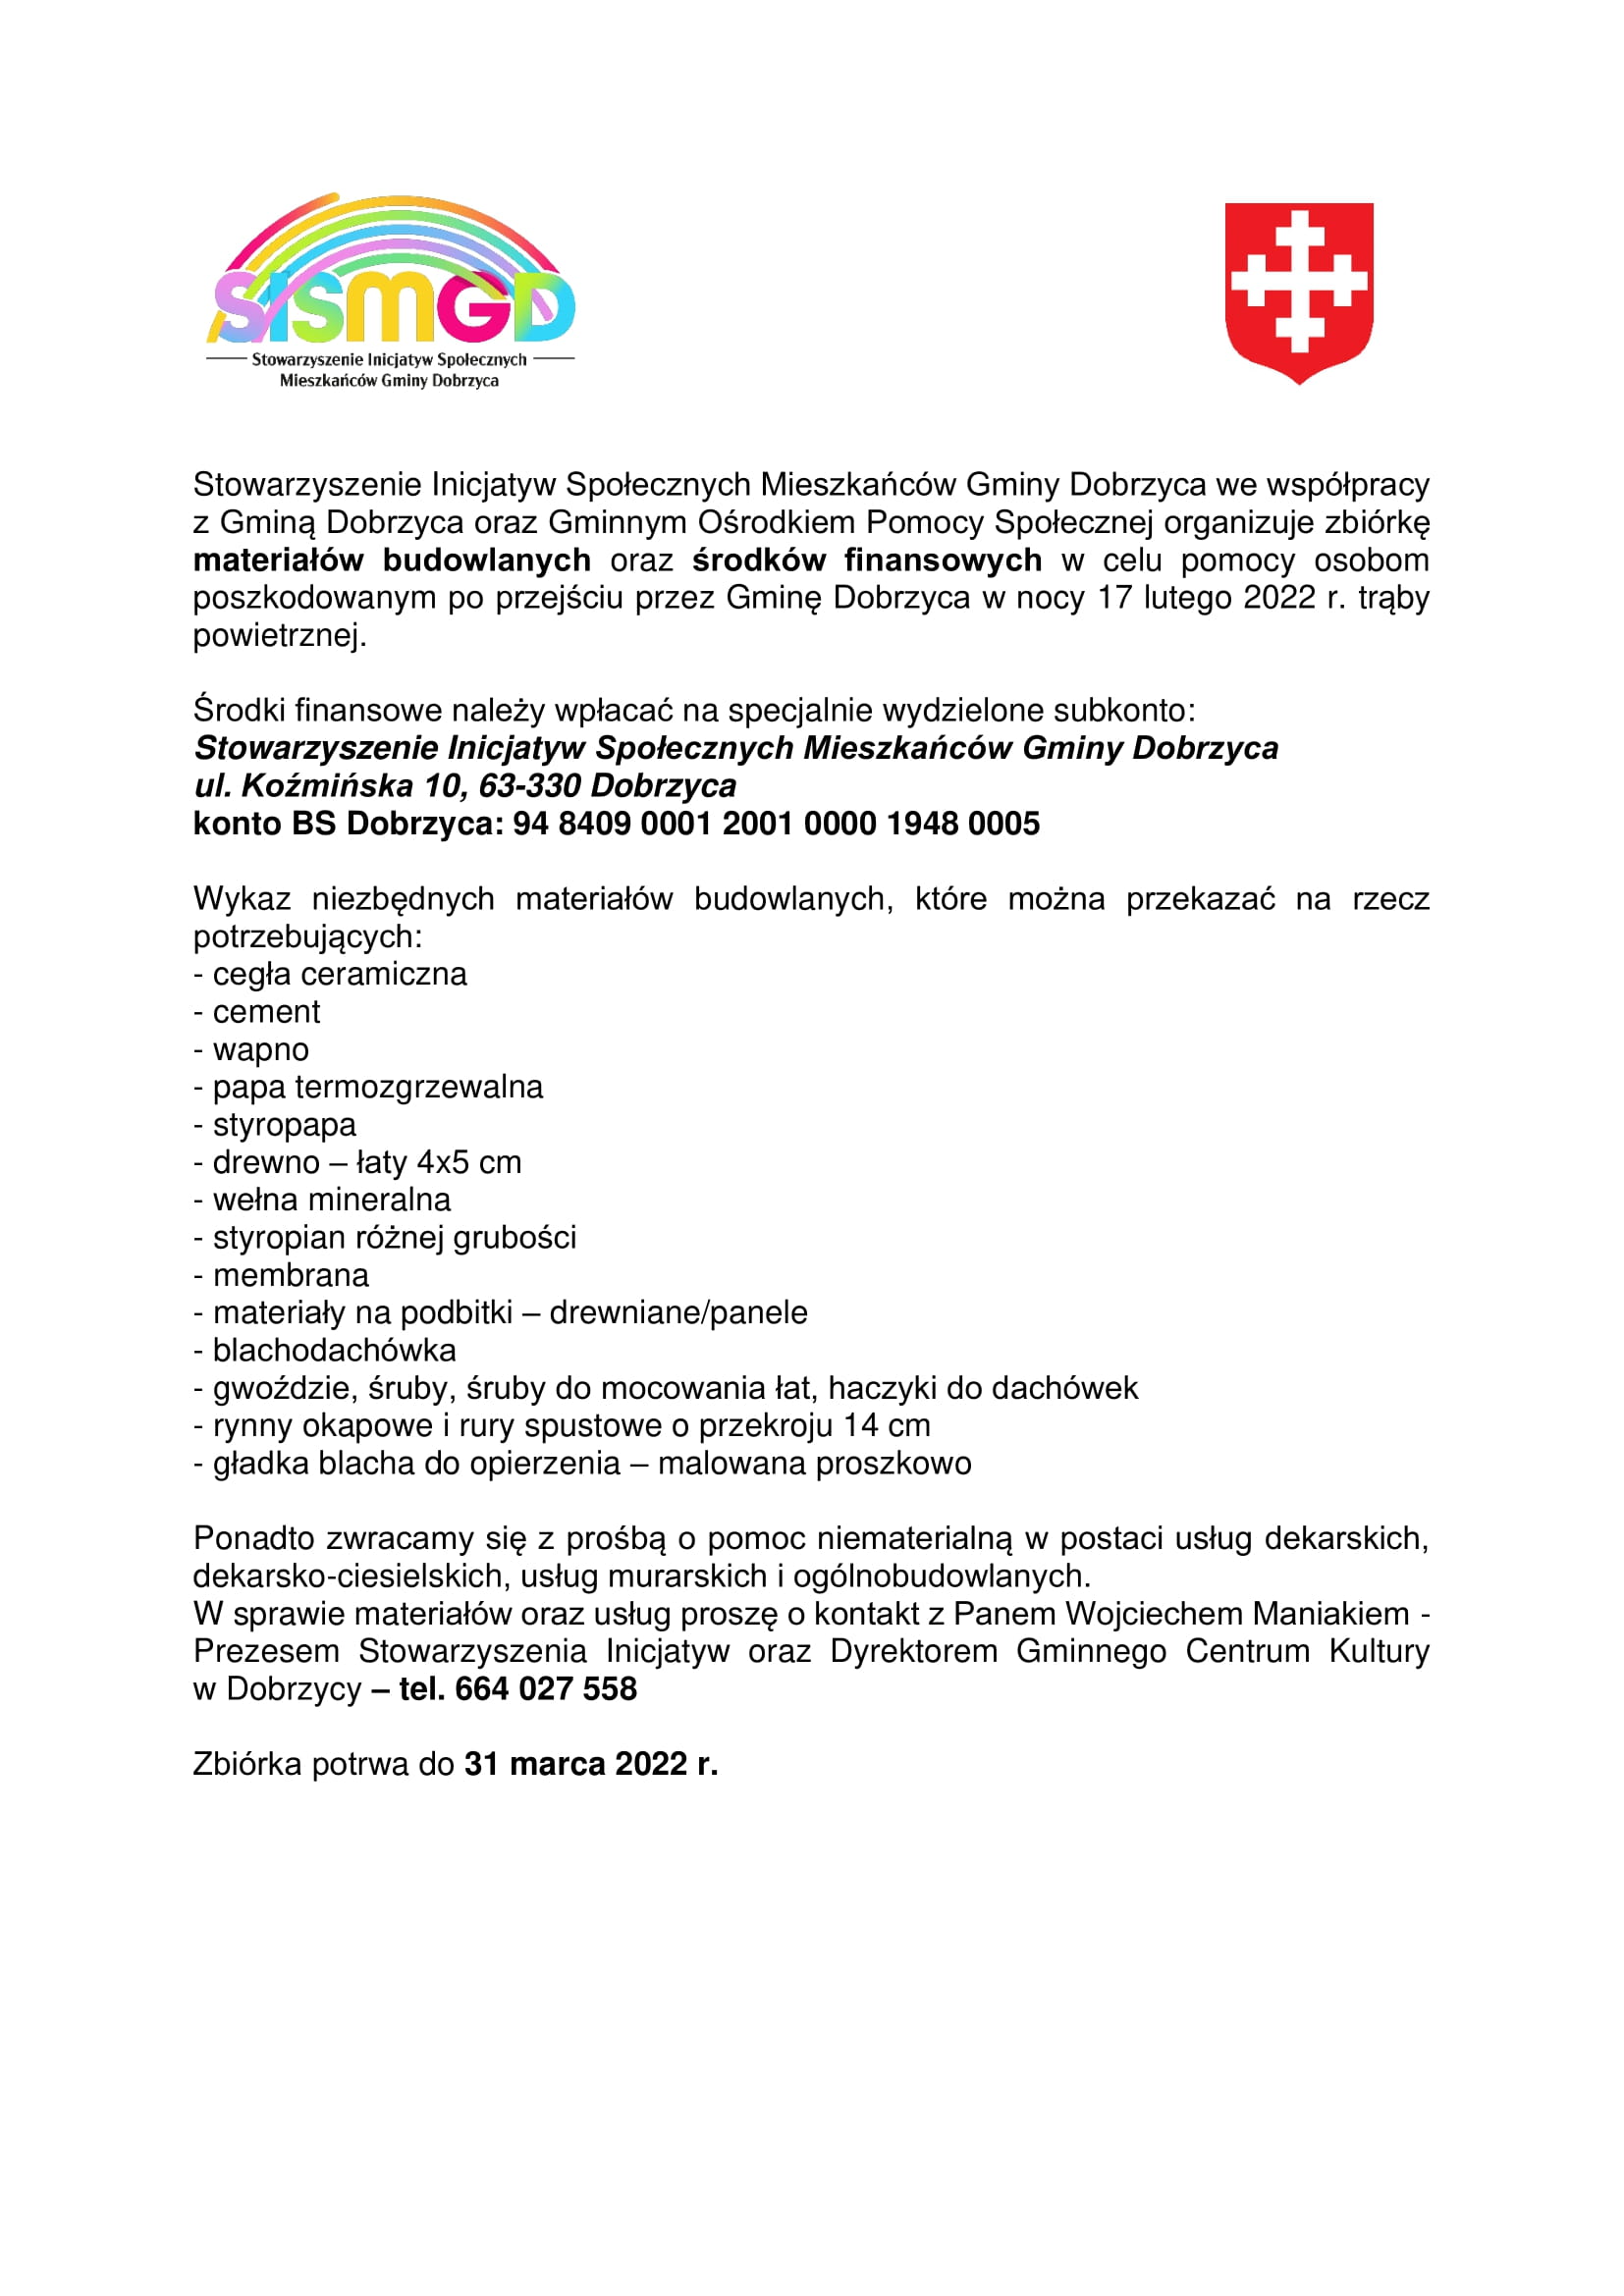 Zbiórka w celu pomocy osobom poszkodowanym po przejściu przez Gminę Dobrzyca w nocy 17 lutego 2022 r. trąby powietrznej